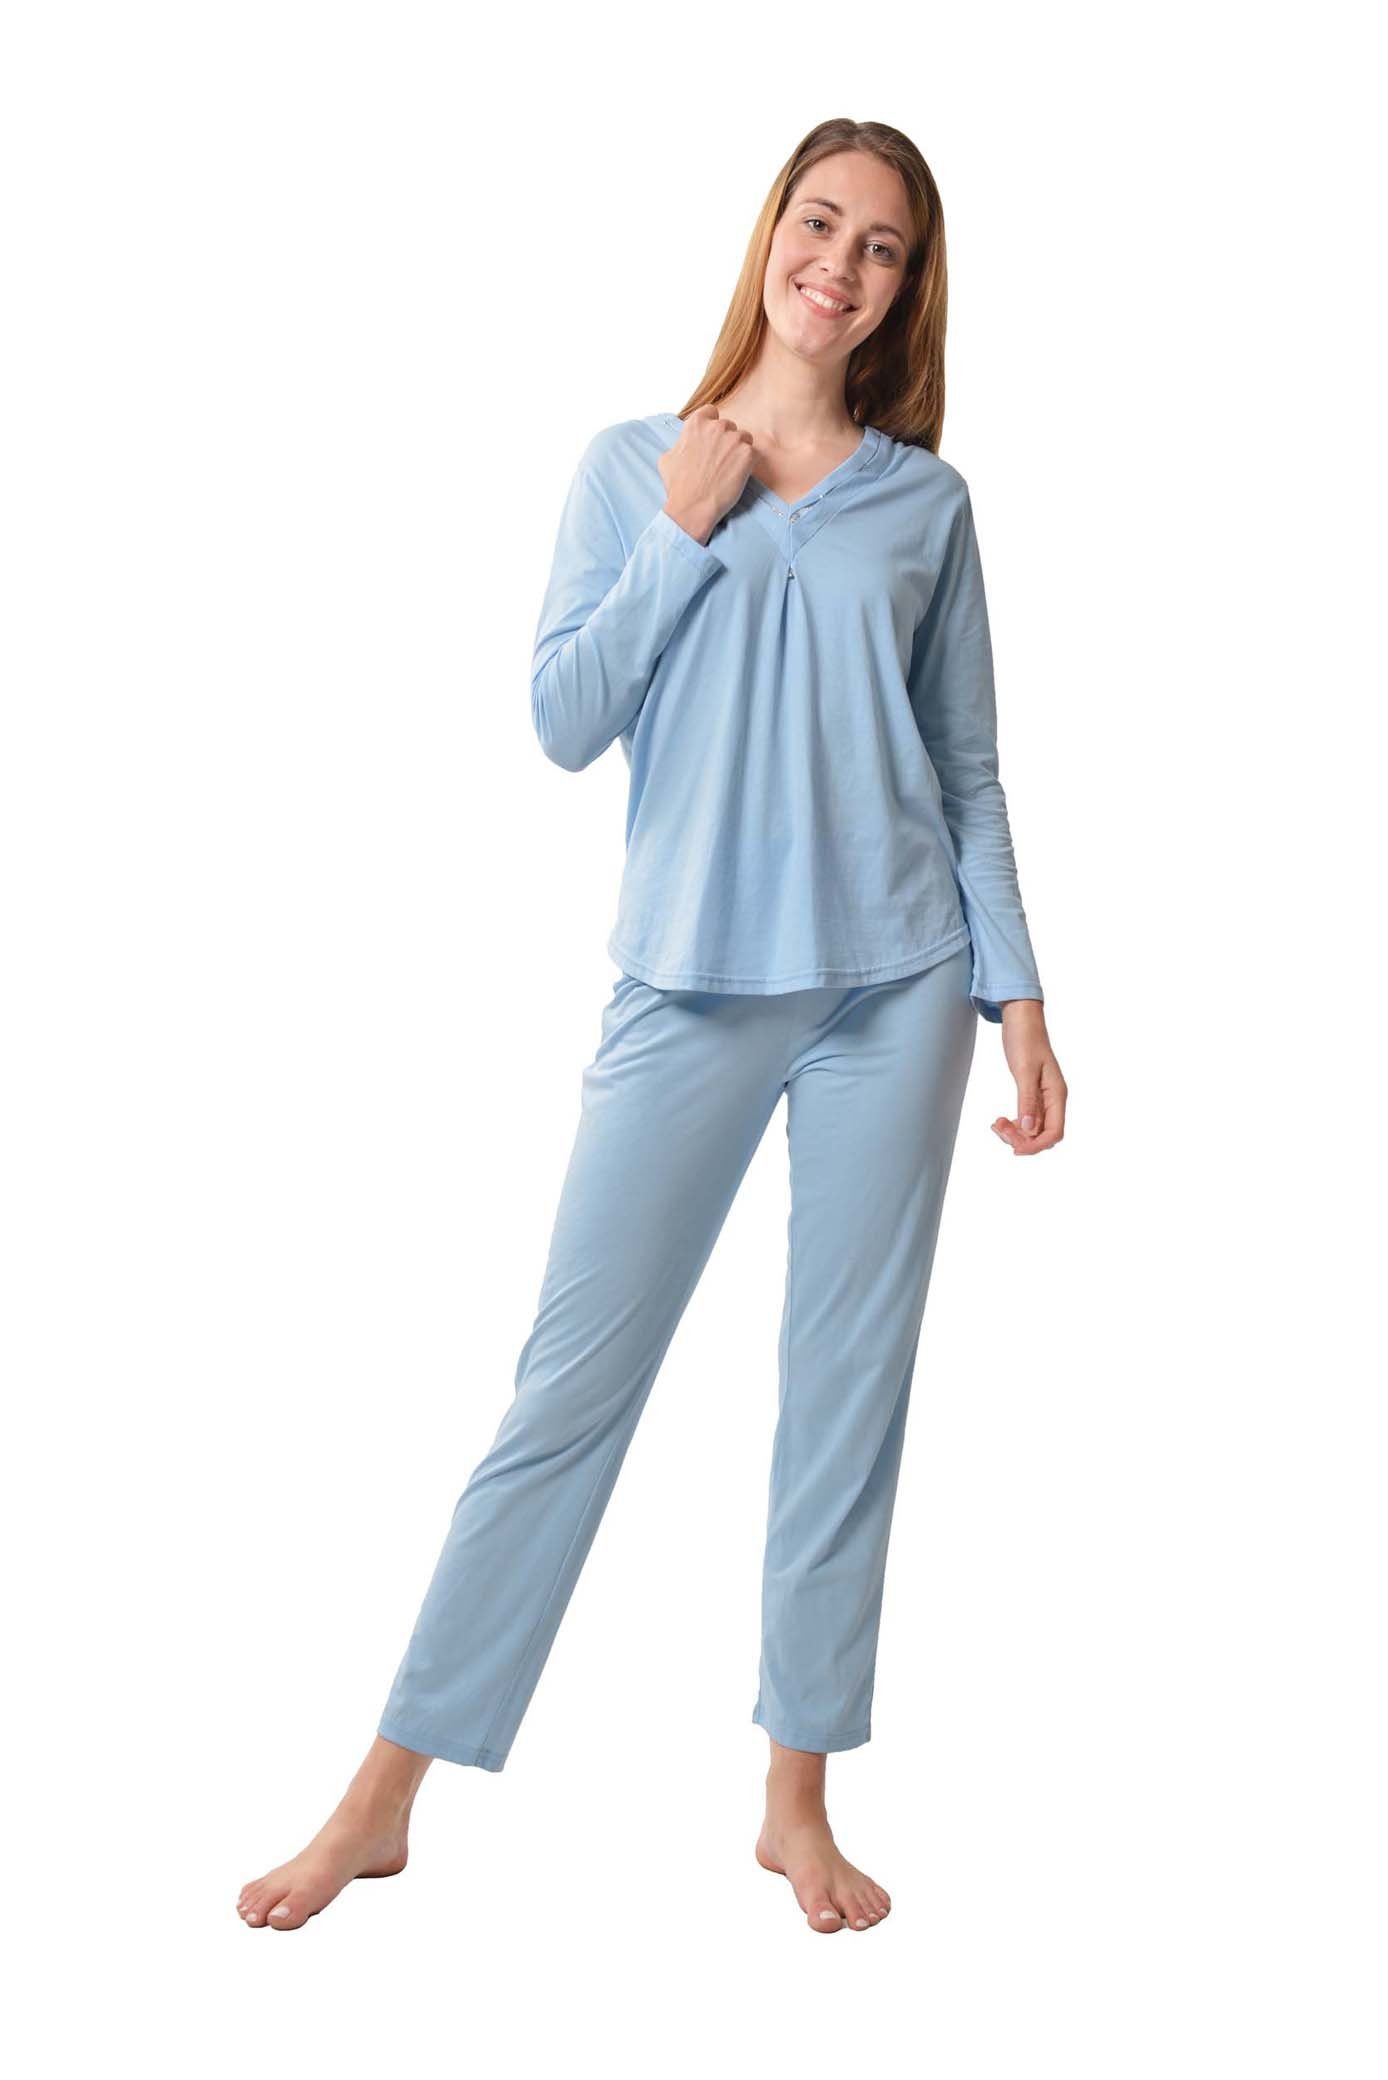 Pyjama Nachthemd Damen/Womens Nachtwäsche Gewebt 100% Baumwolle Schlafanzüge 